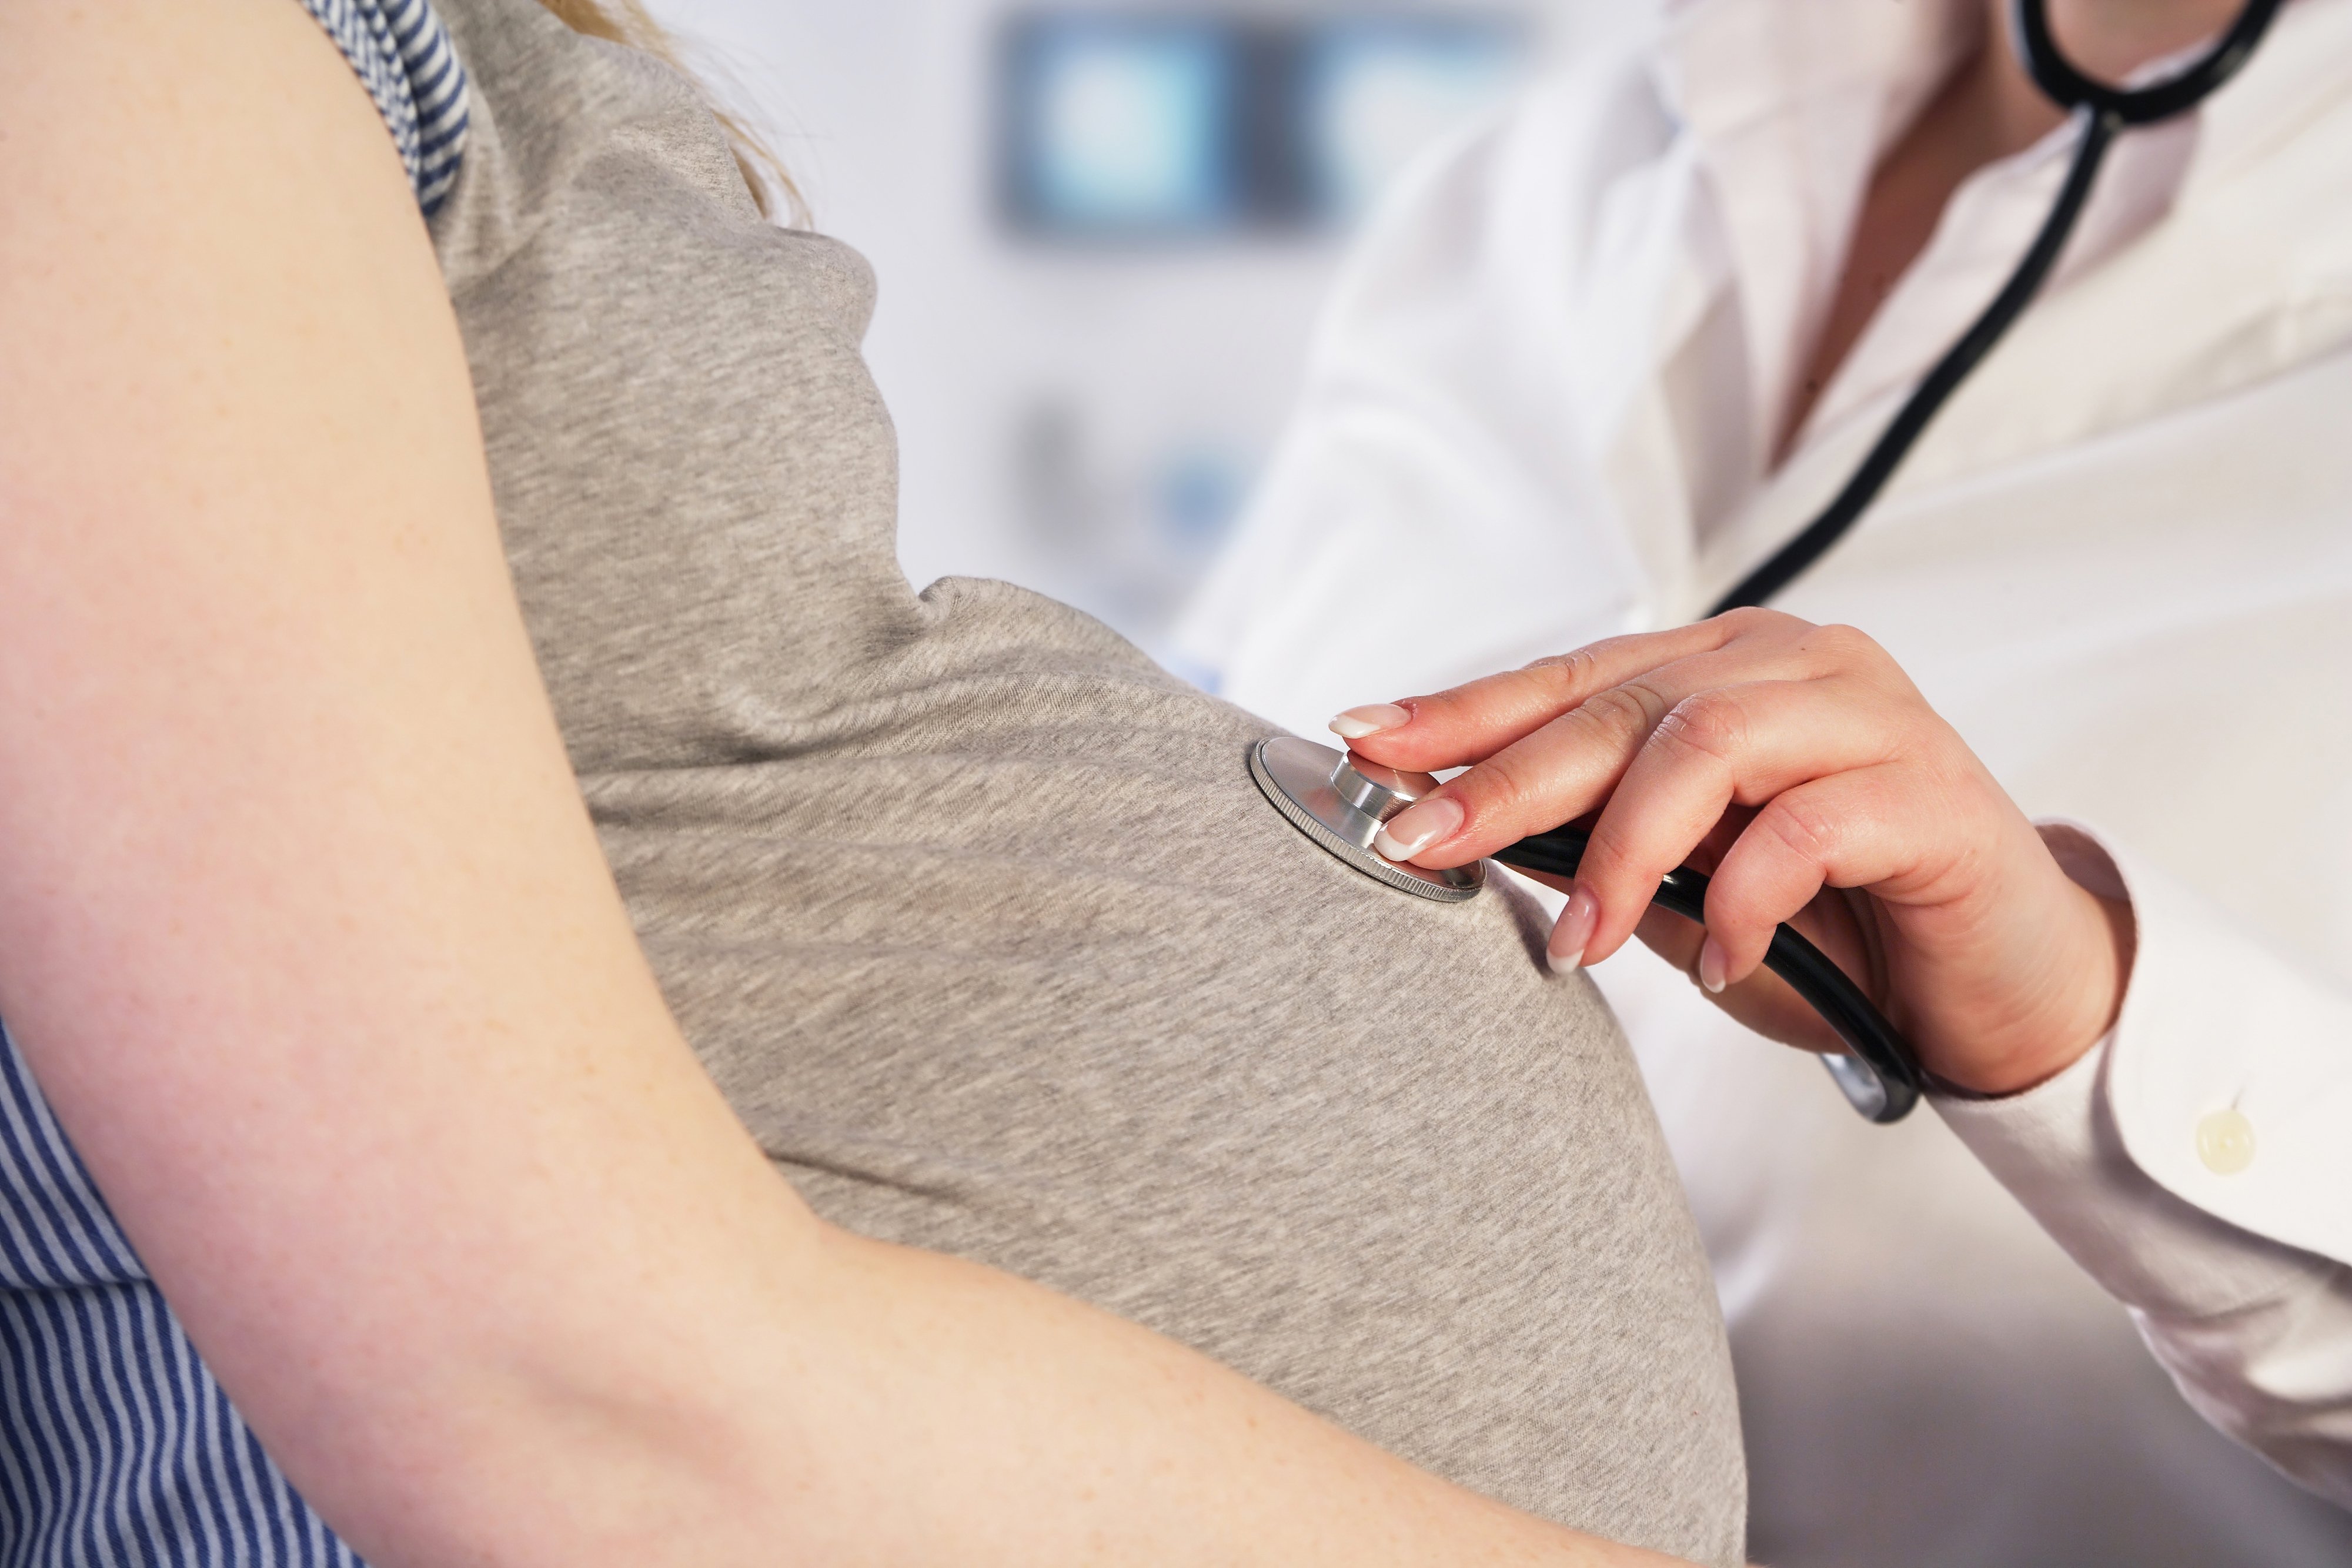 Arzt untersucht eine schwangere Frau | Quelle: Shutterstock